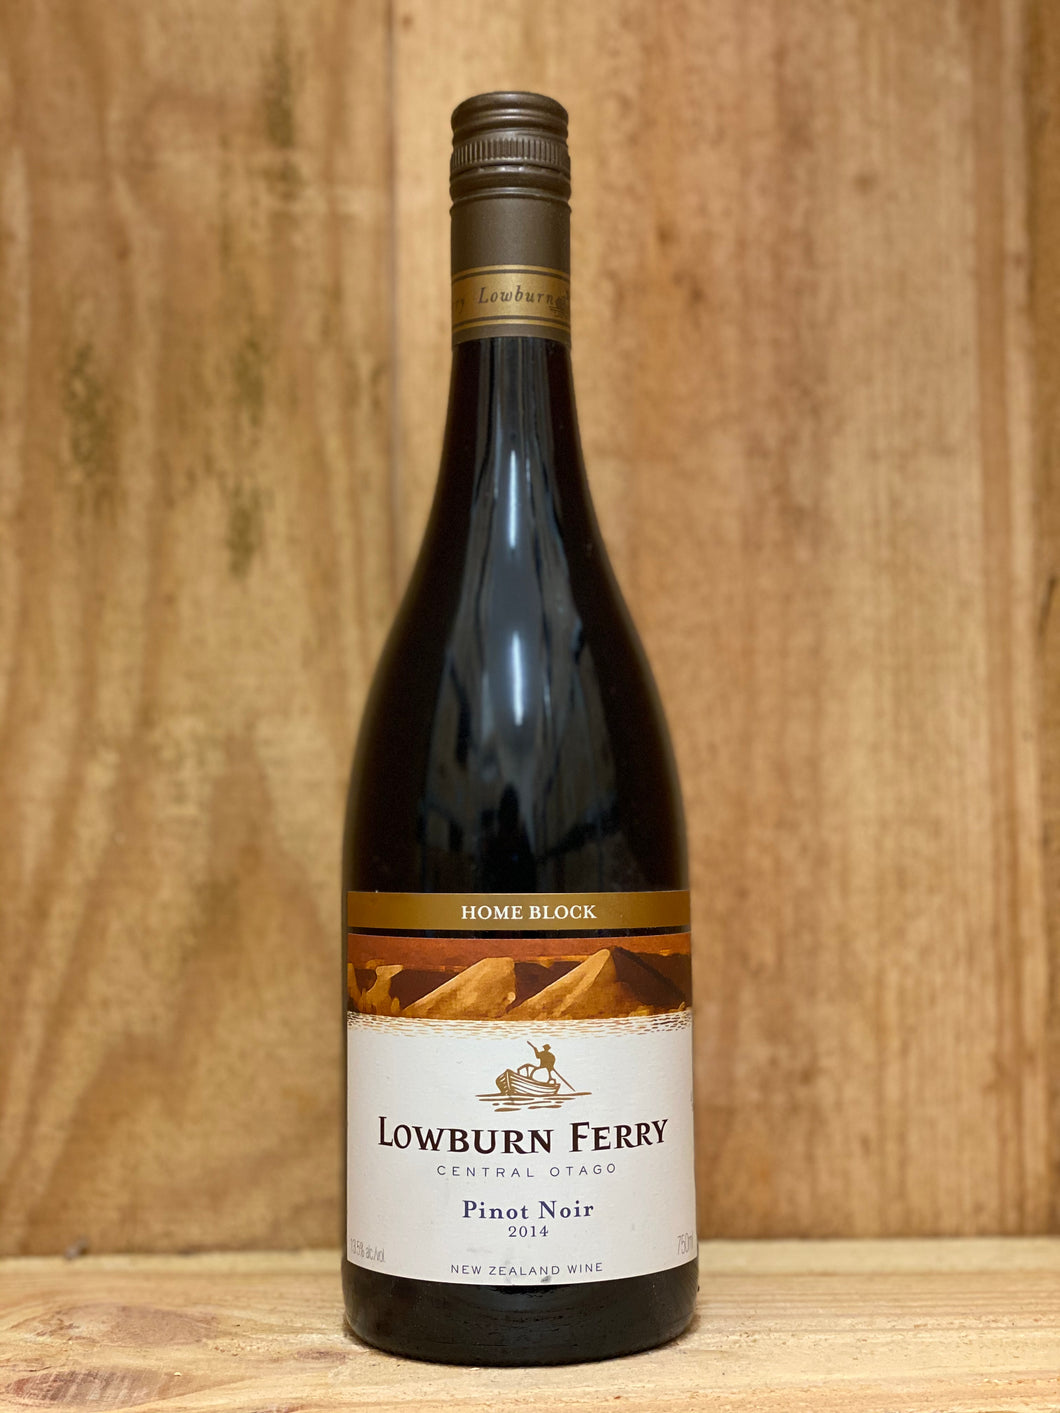 Lowburn Ferry 2014 Home Block Pinot Noir